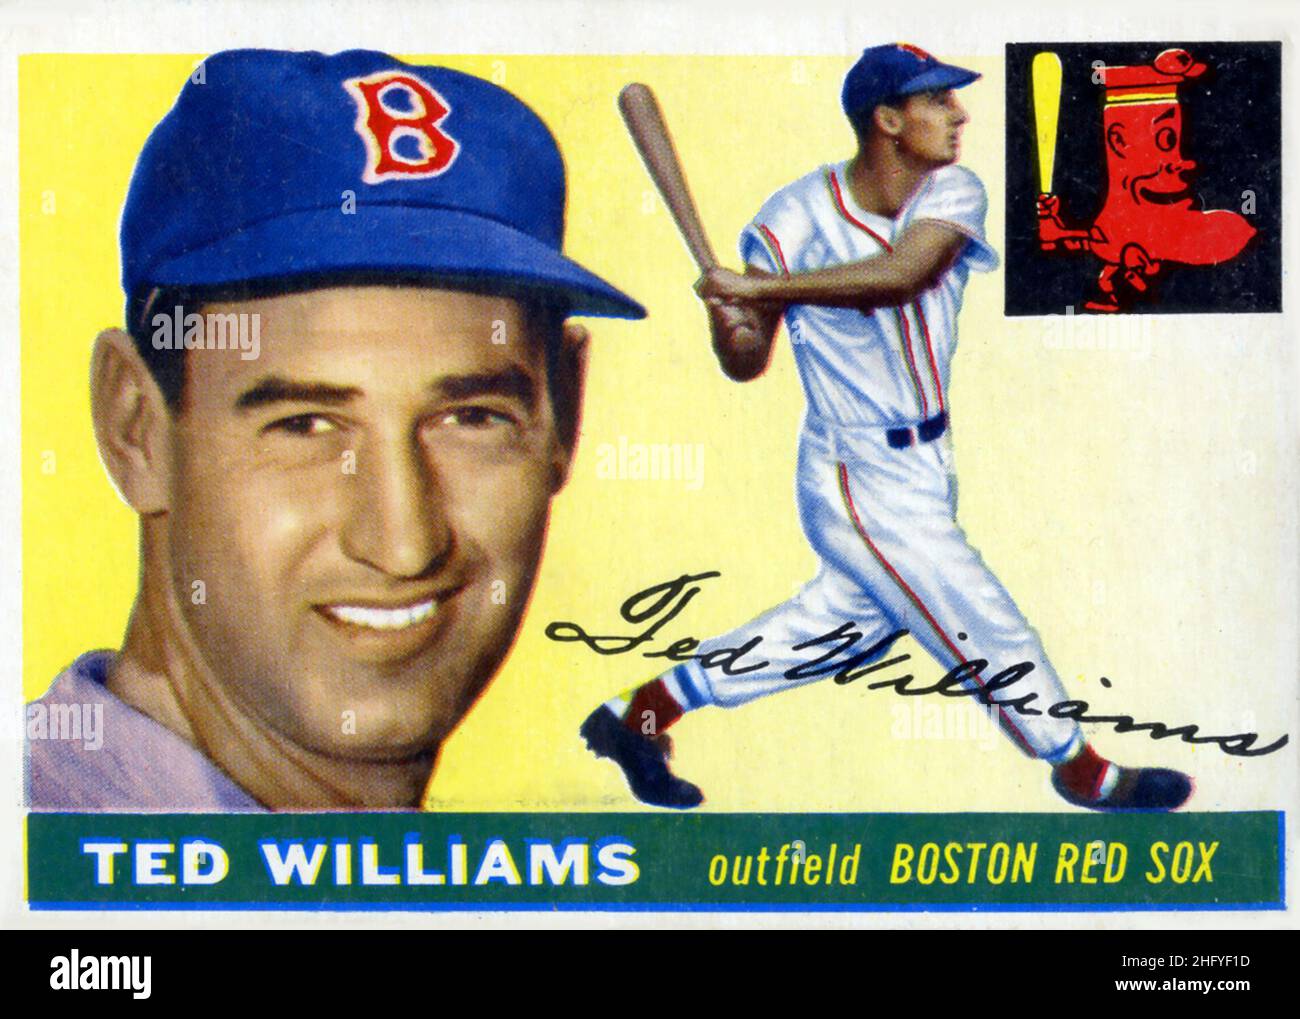 Eine 1955 Topps Baseballkarte, auf der der Hall of Fame-Spieler Ted Williams mit der Boston Red Sox abgebildet ist. Stockfoto